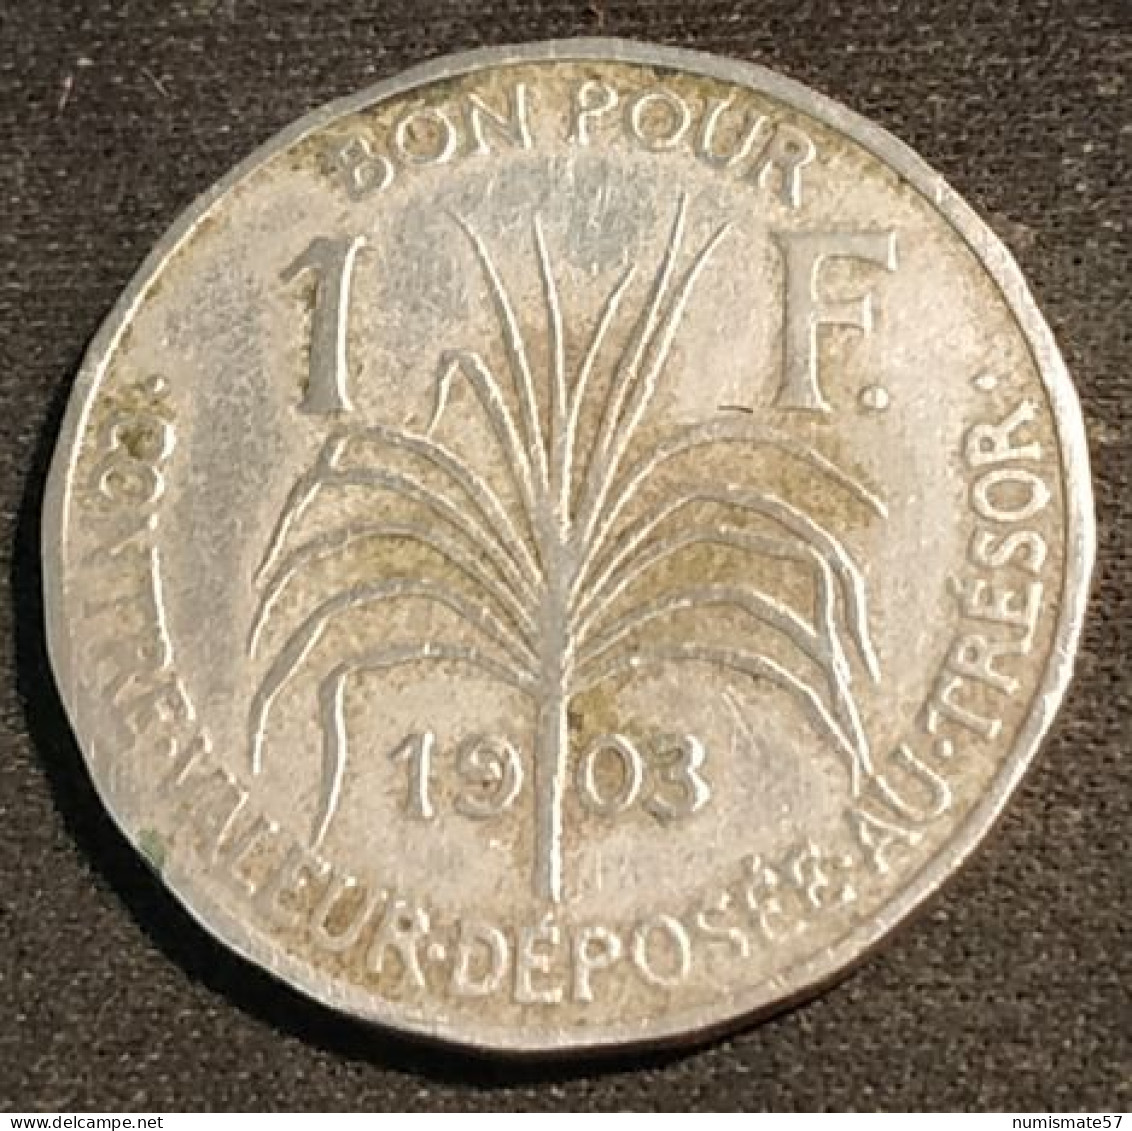 RARE - GUADELOUPE - BON POUR 1 FRANC 1903 - KM 46 - Guadeloupe Und Martinique